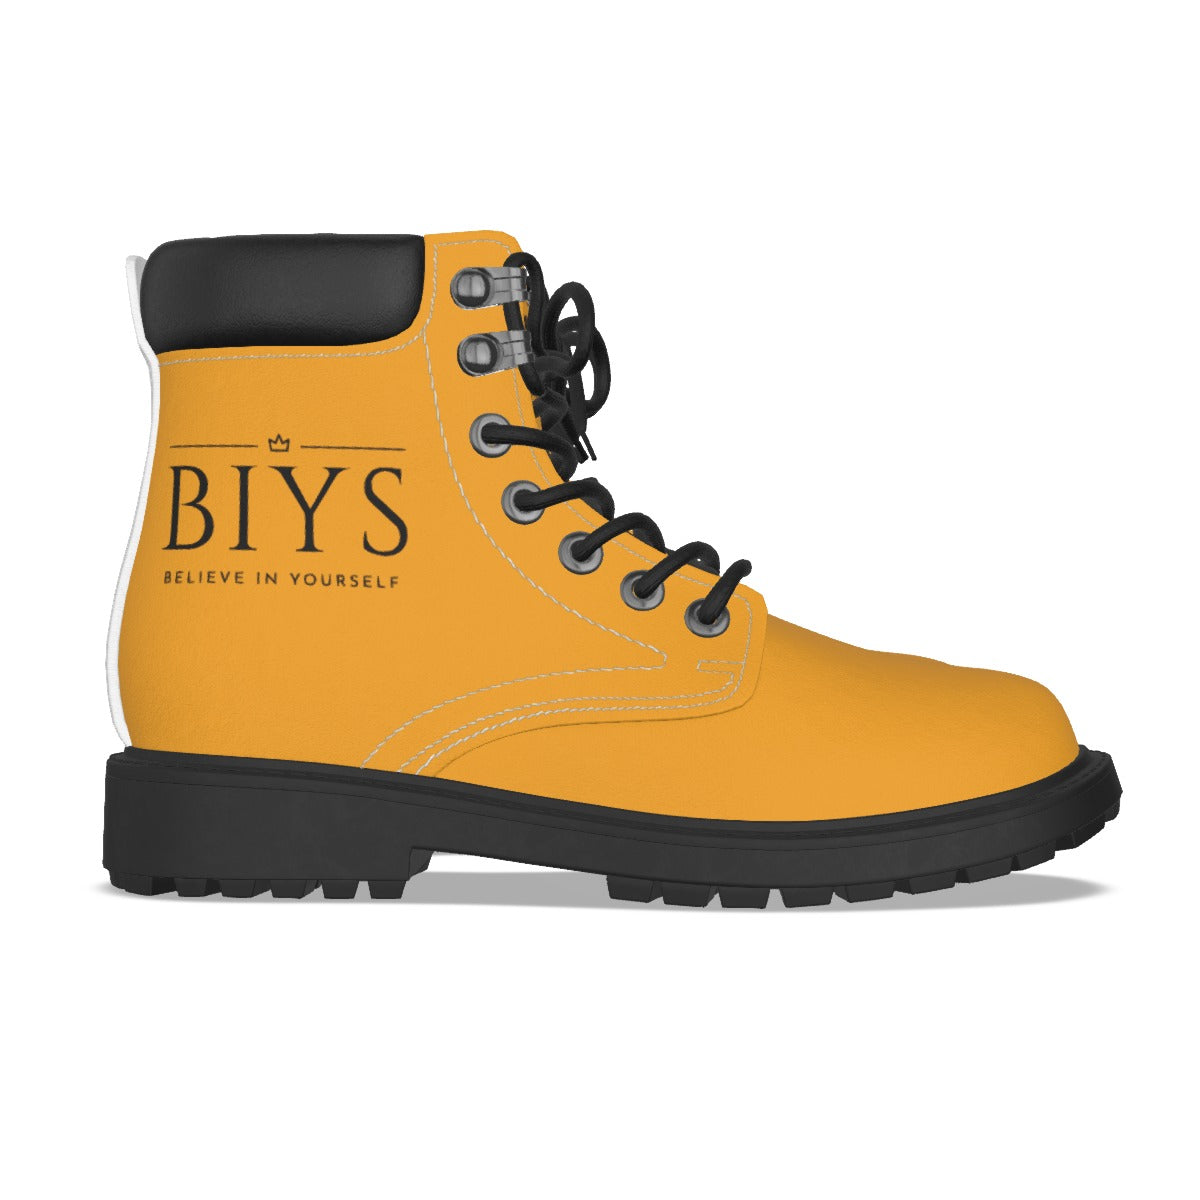 BIYS Men's Gold Boots